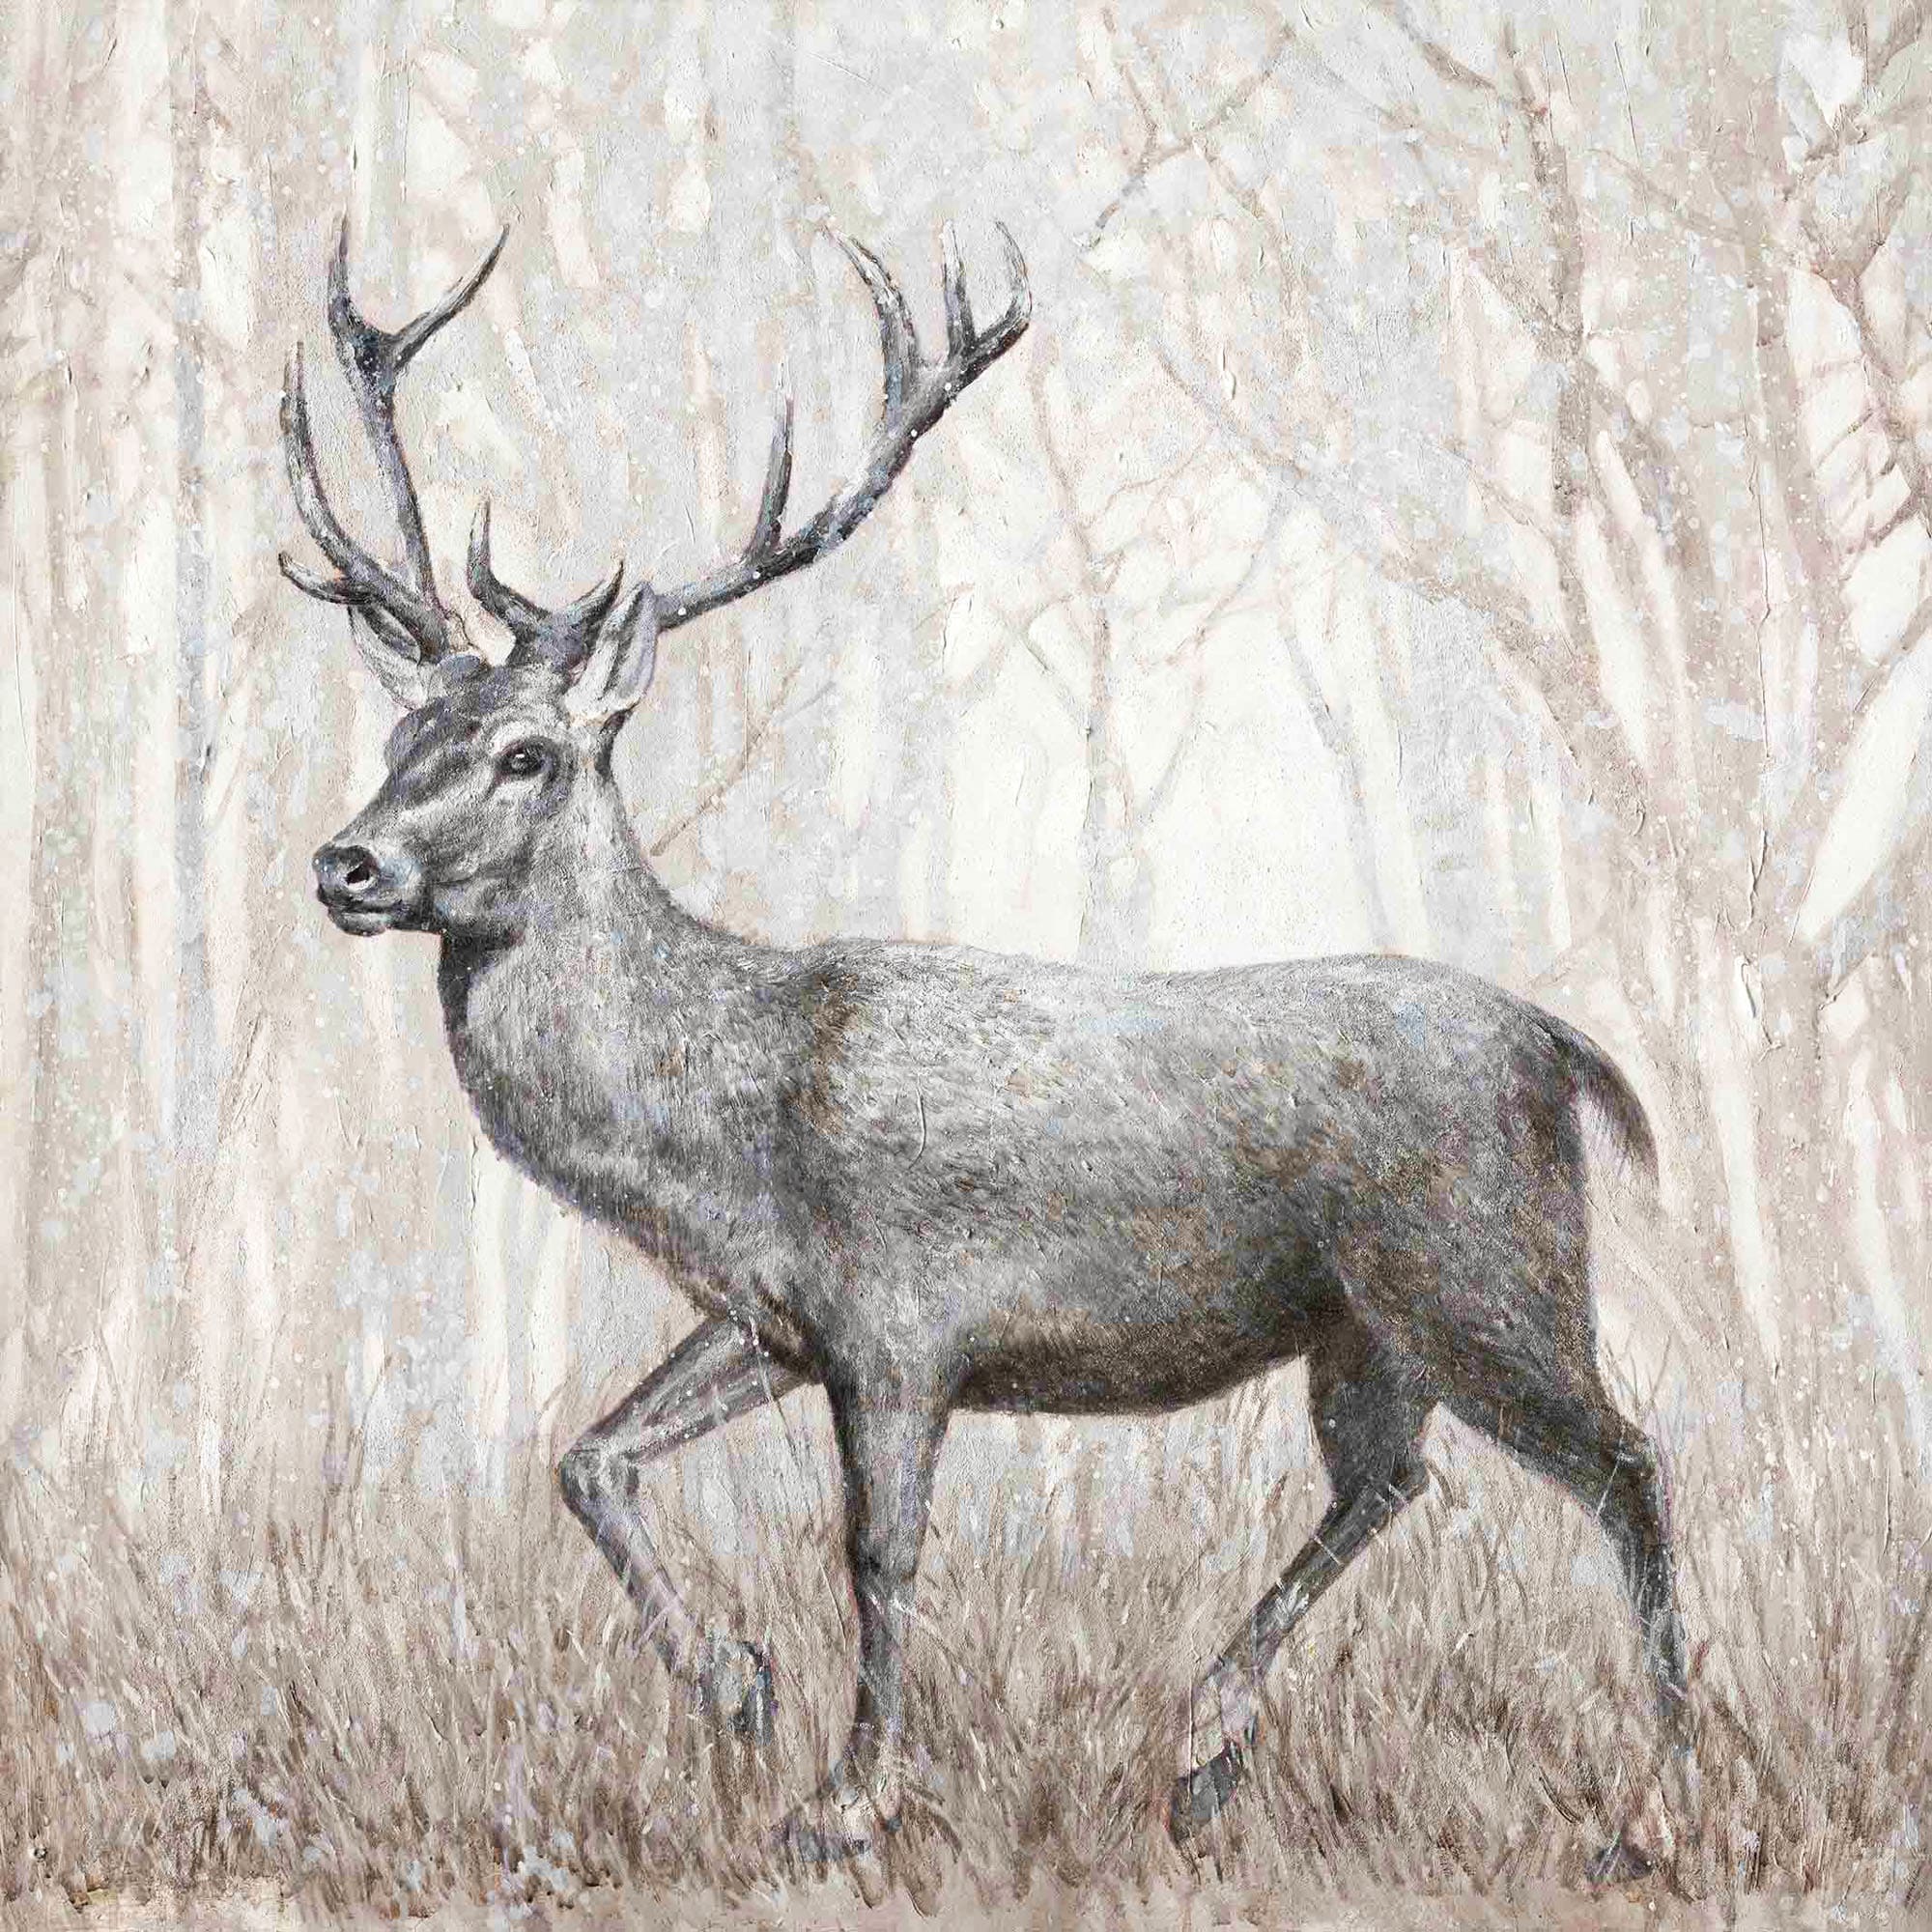 Ölbild Hirsch im Wald schwarz-weiß-braun mix 100x100cm